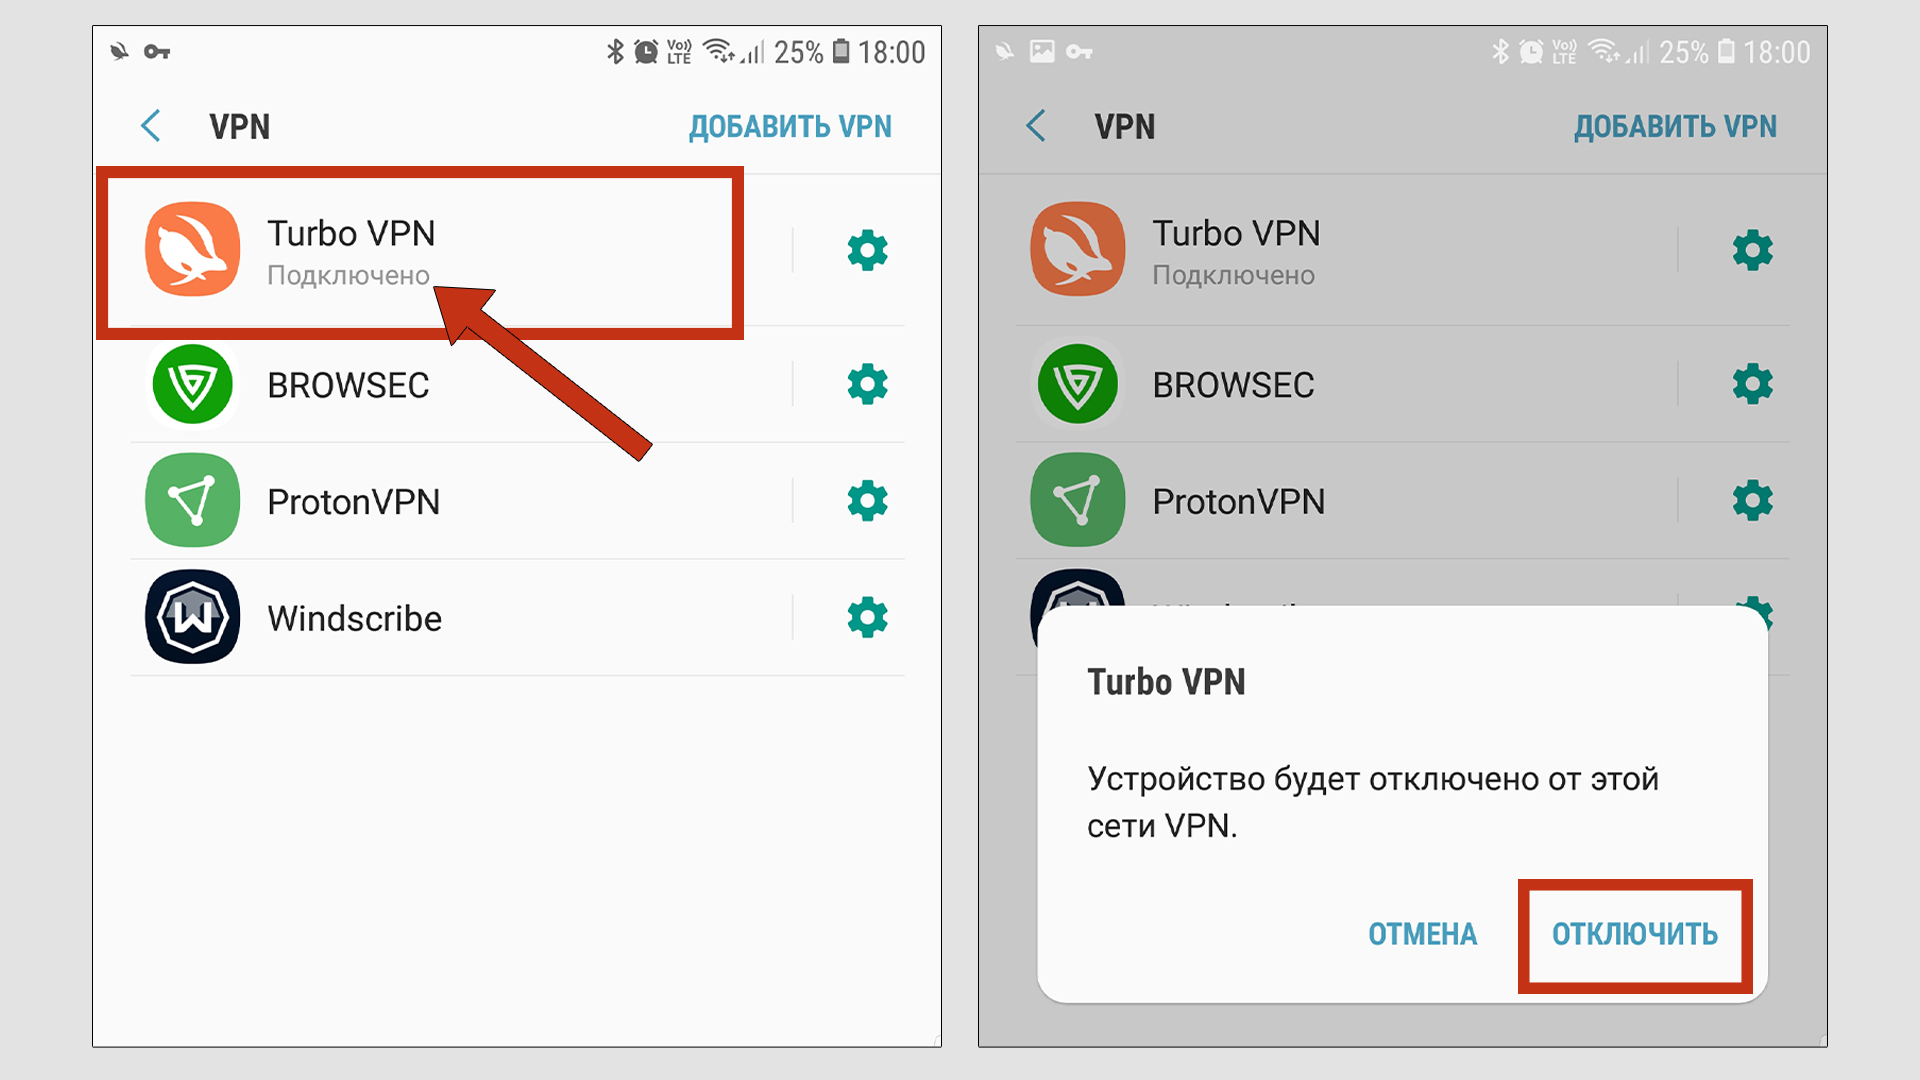 Список подключений VPN на Андроид. Отмечен Turbo VPN, кнопка отключения.